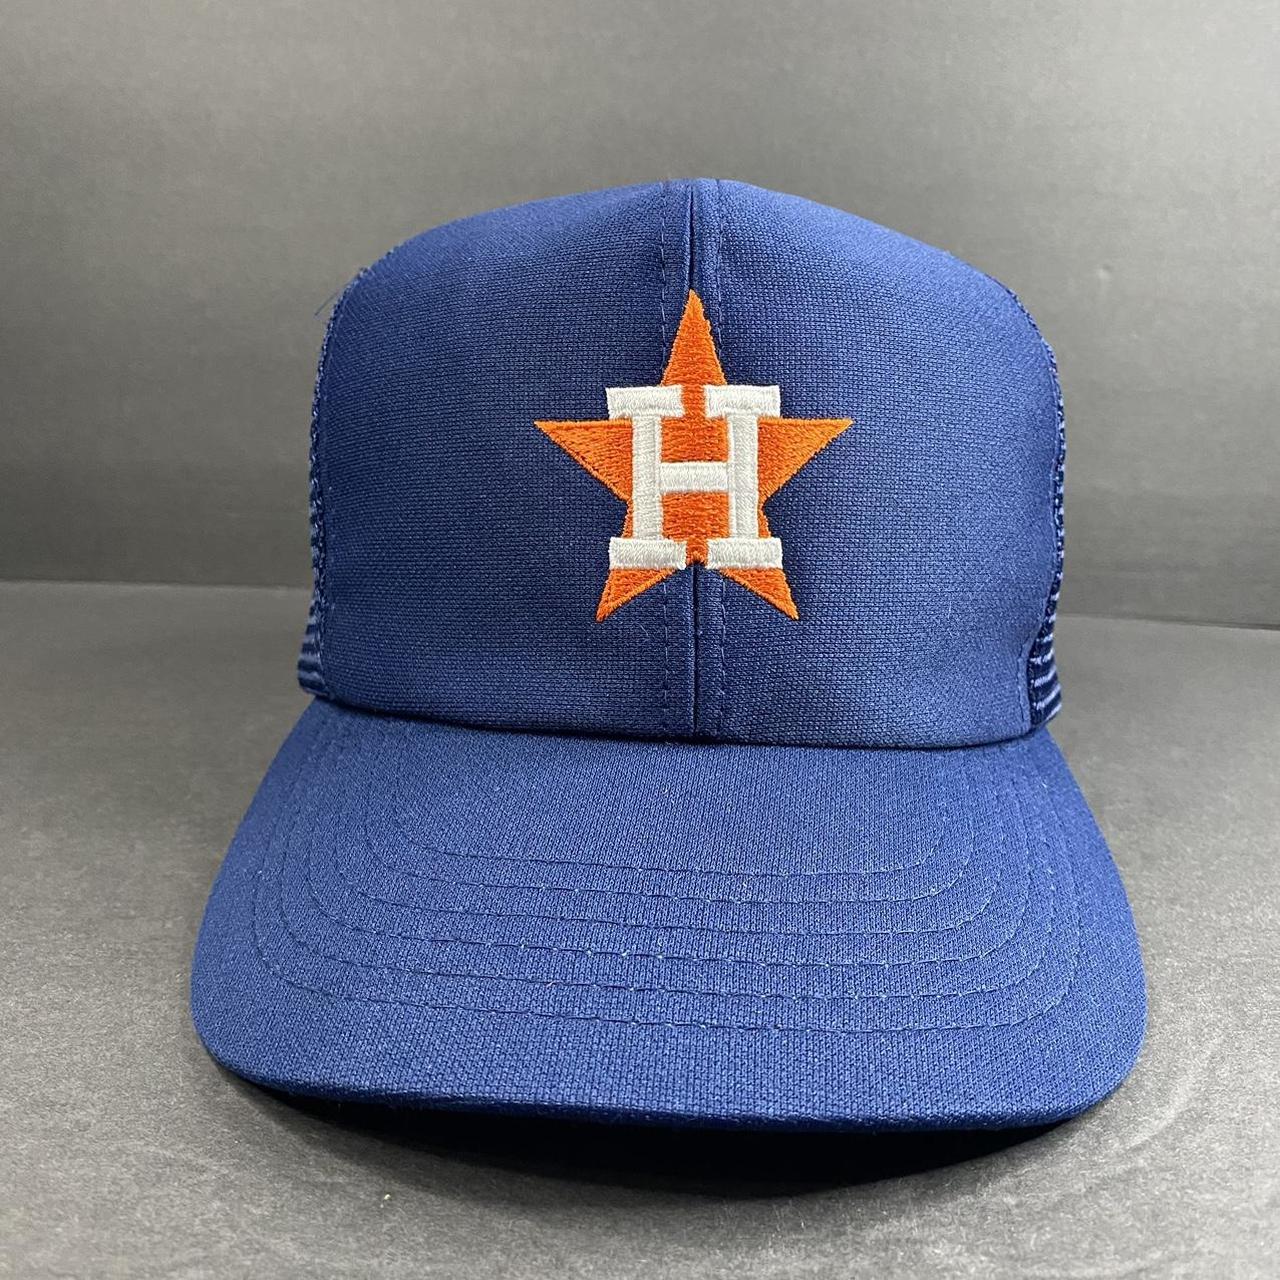 Vintage Houston Astros Trucker Hat it will be - Depop